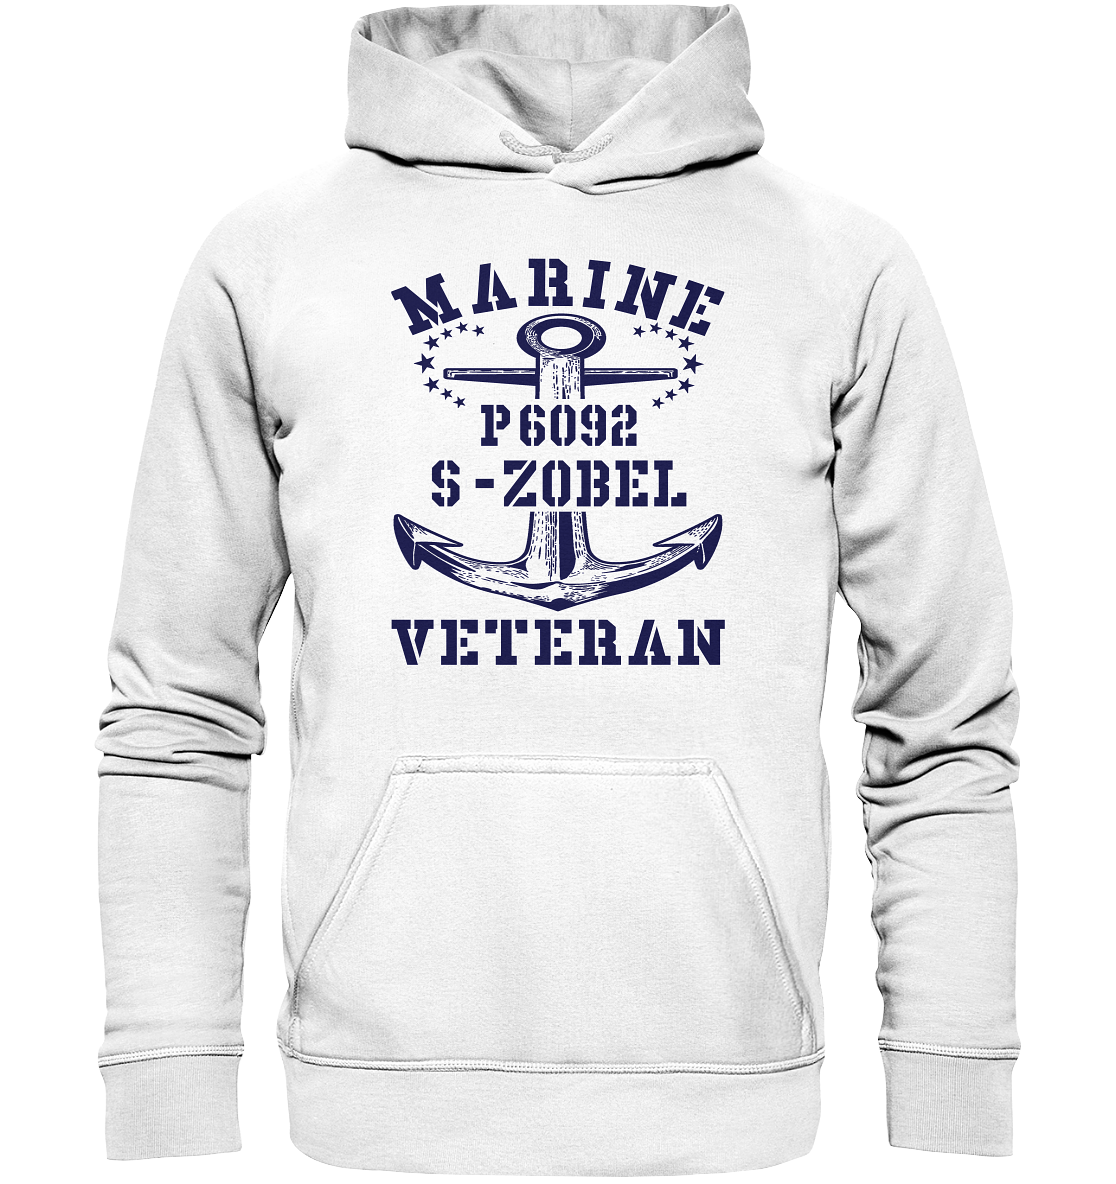 P6092 S-ZOBEL Marine Veteran - Basic Unisex Hoodie